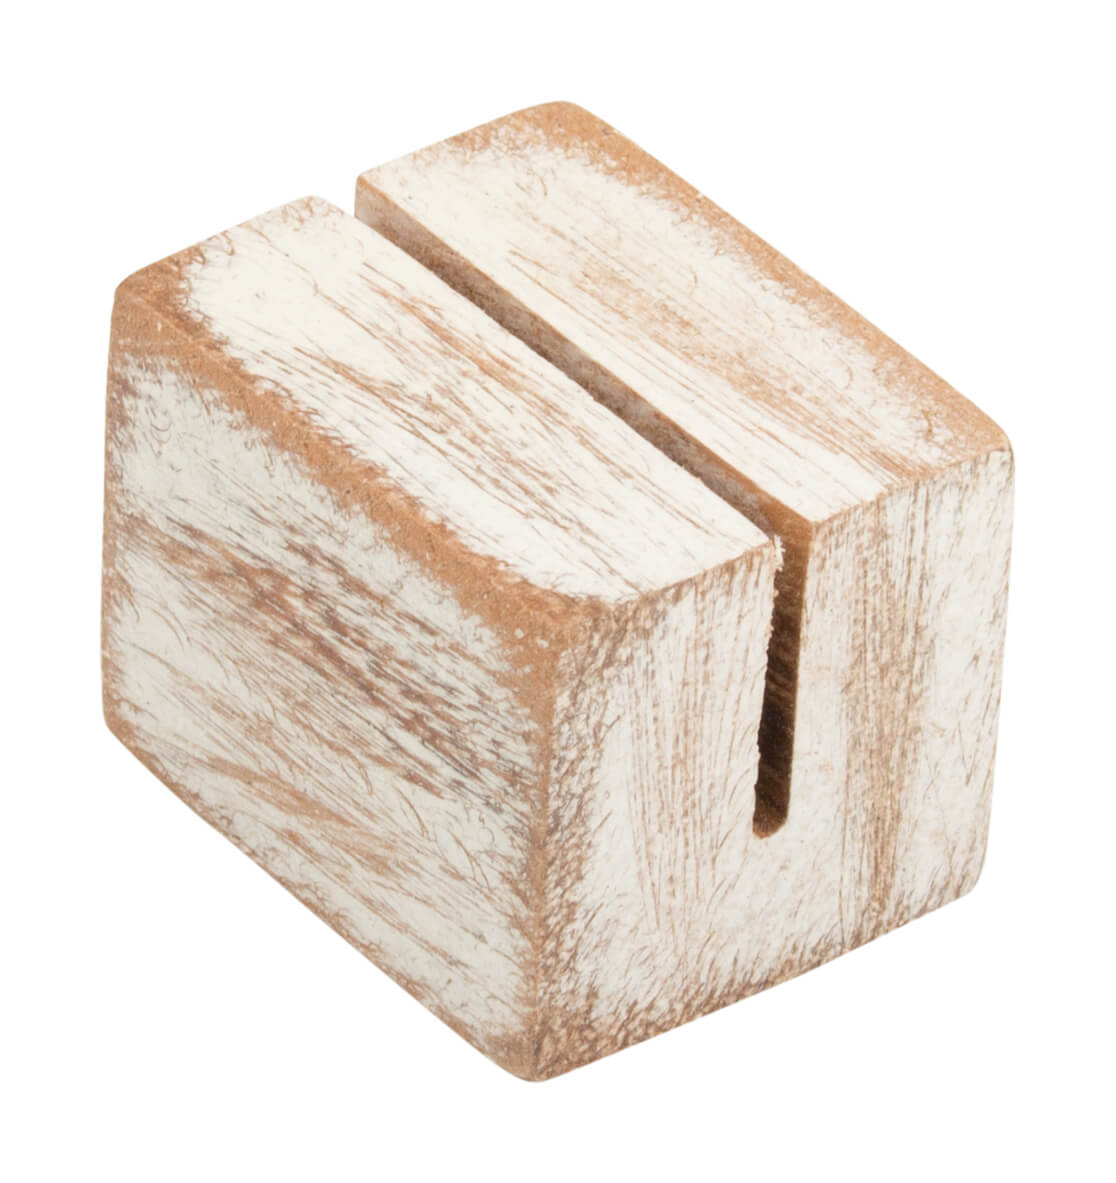 Kartenhalter Holz mini, white wash - 3x2,5x2,5cm